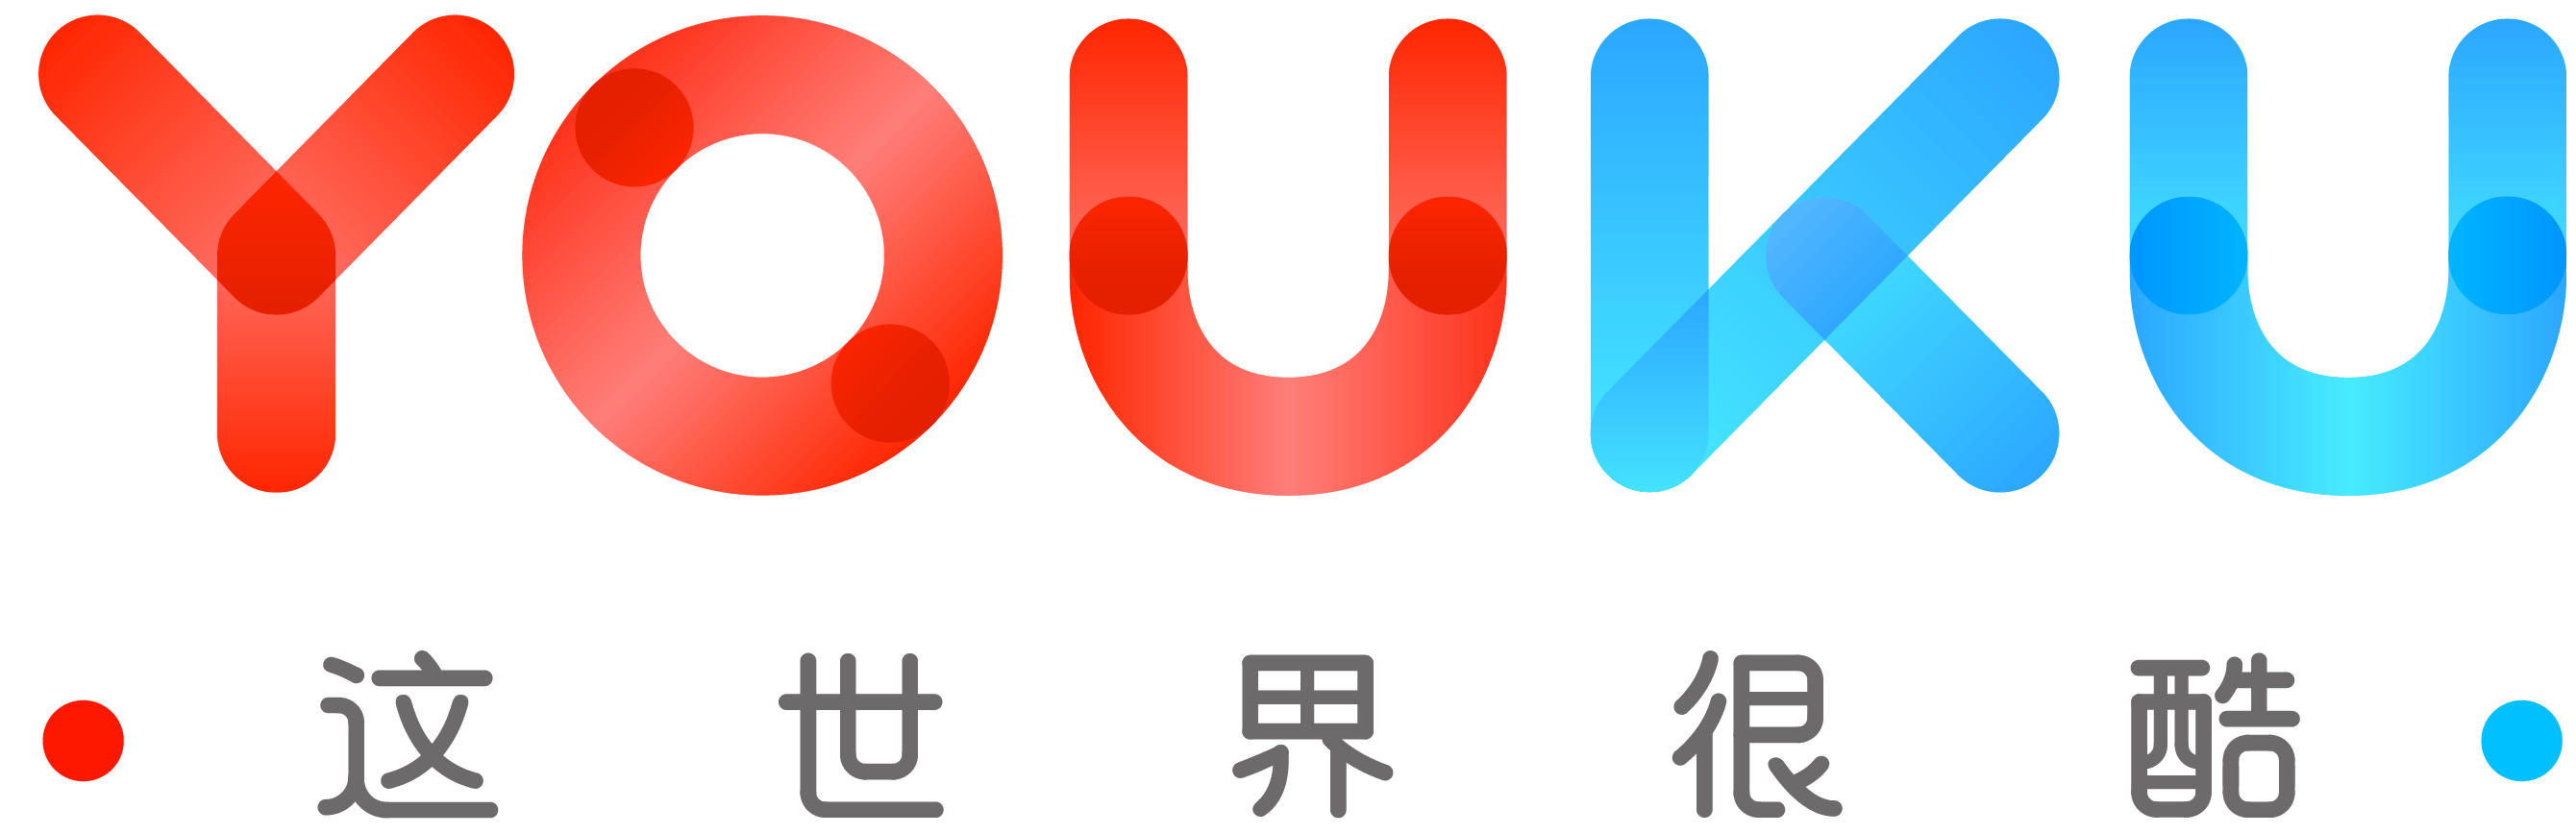 Youku Logo - File:Youku png.png